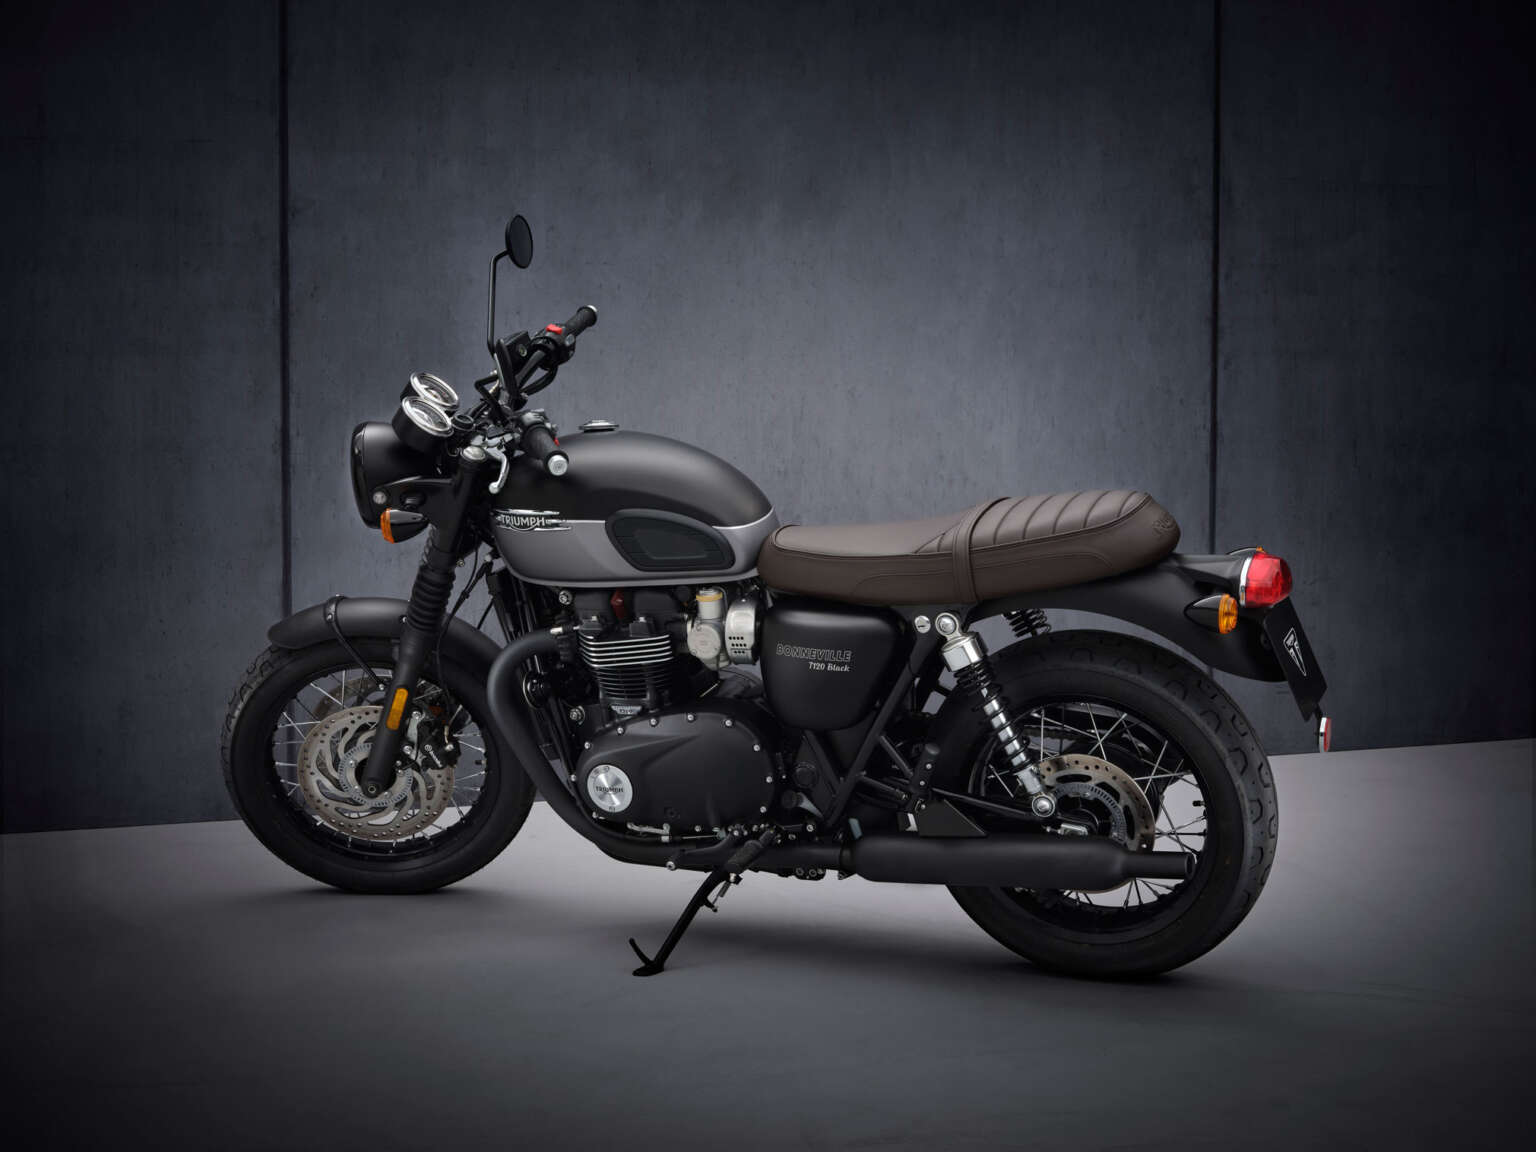 2021 Triumph Bonneville T120 Black Guide • Total Motorcycle